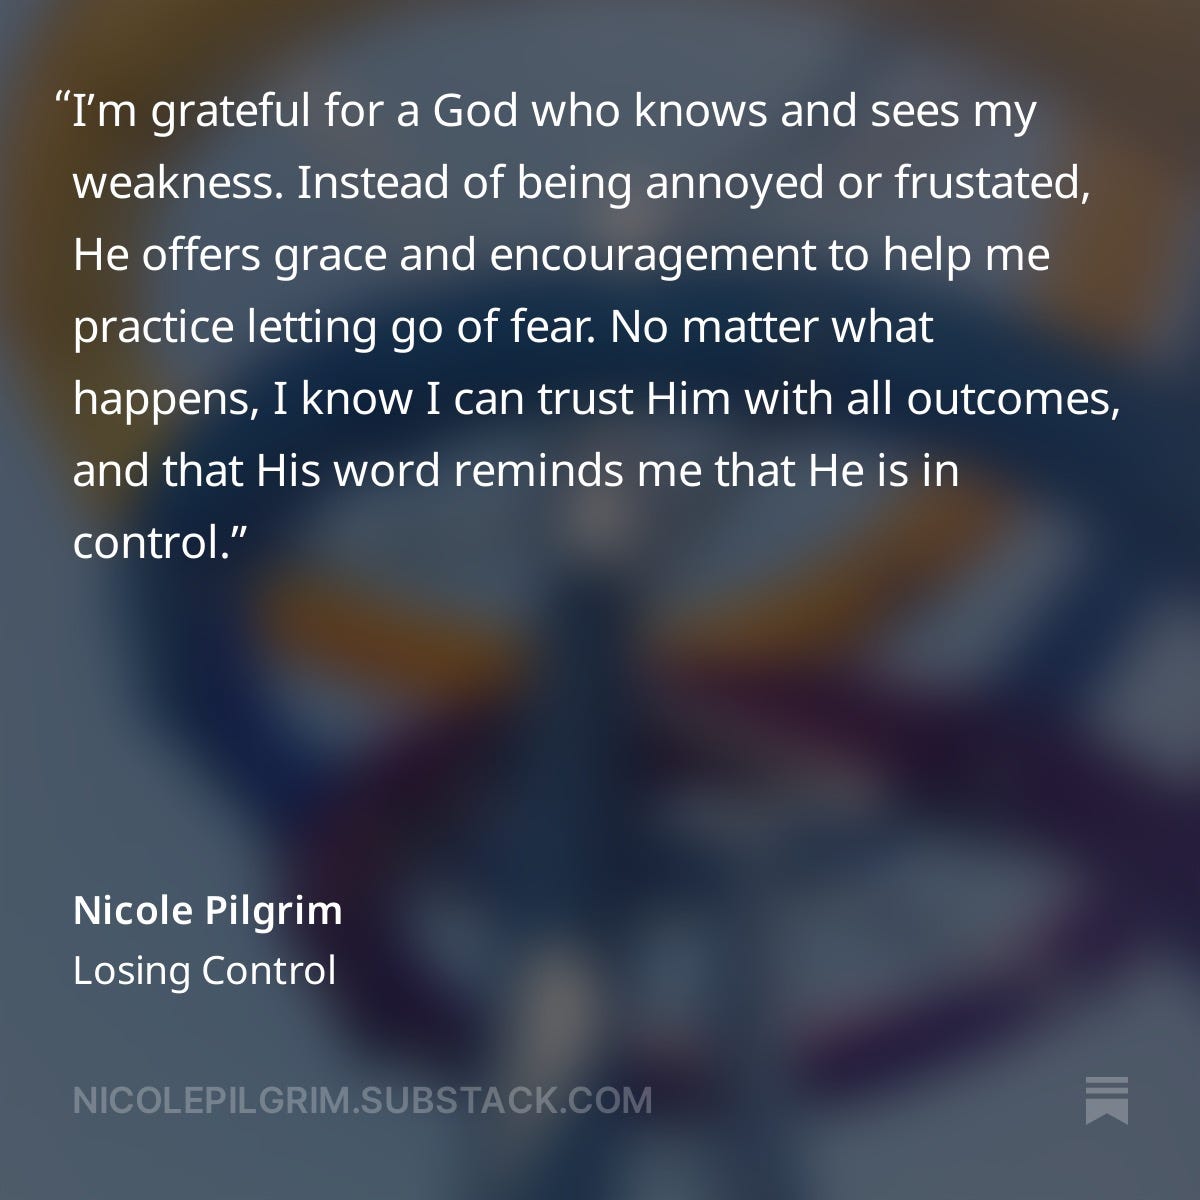 Nicole Pilgrim quote from Losing Control article